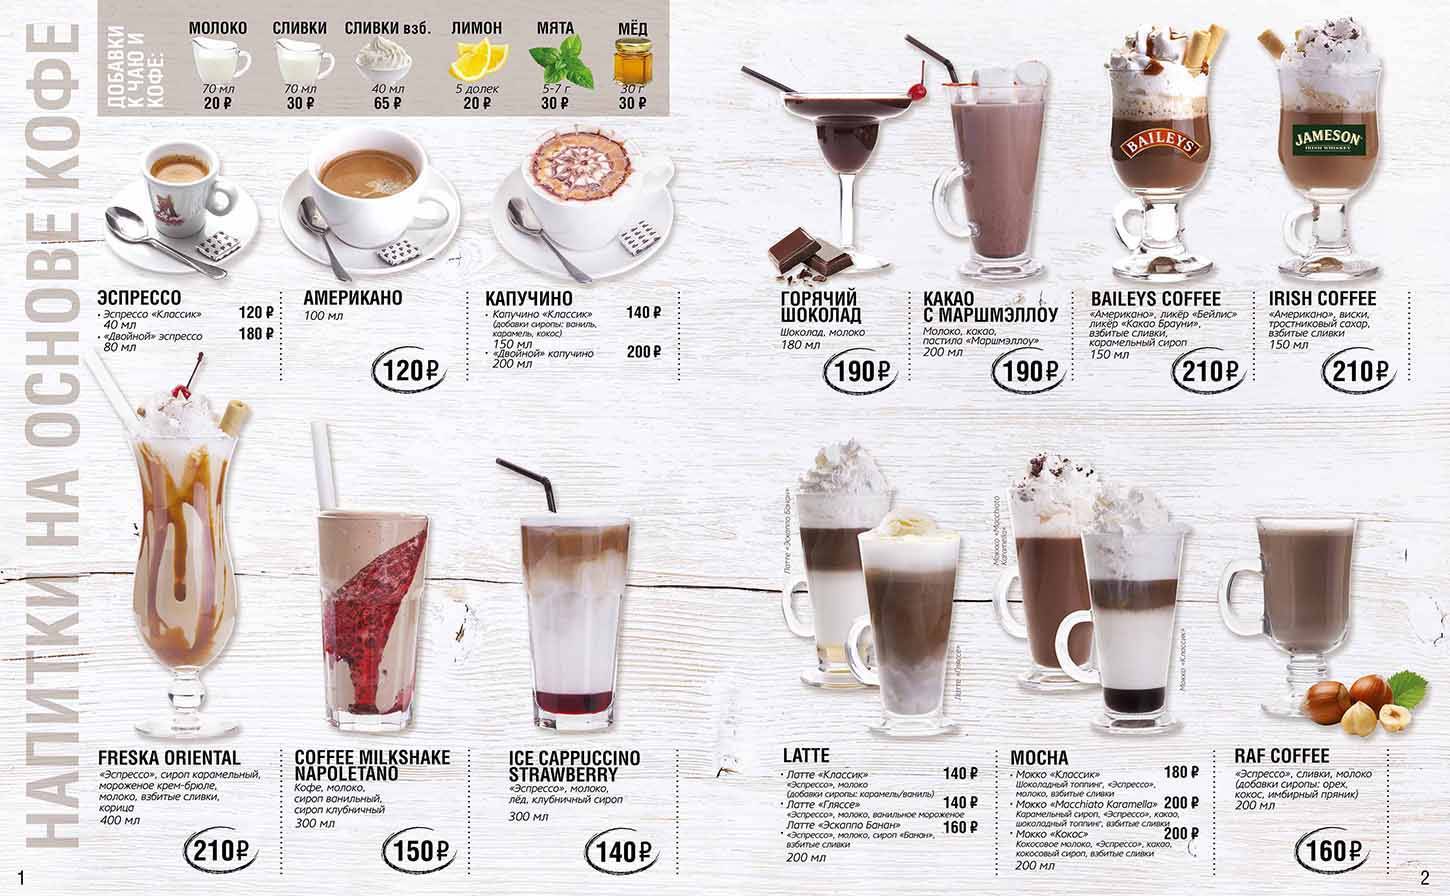 Кофе латте - калорийность и подача, фото и видео рецепт